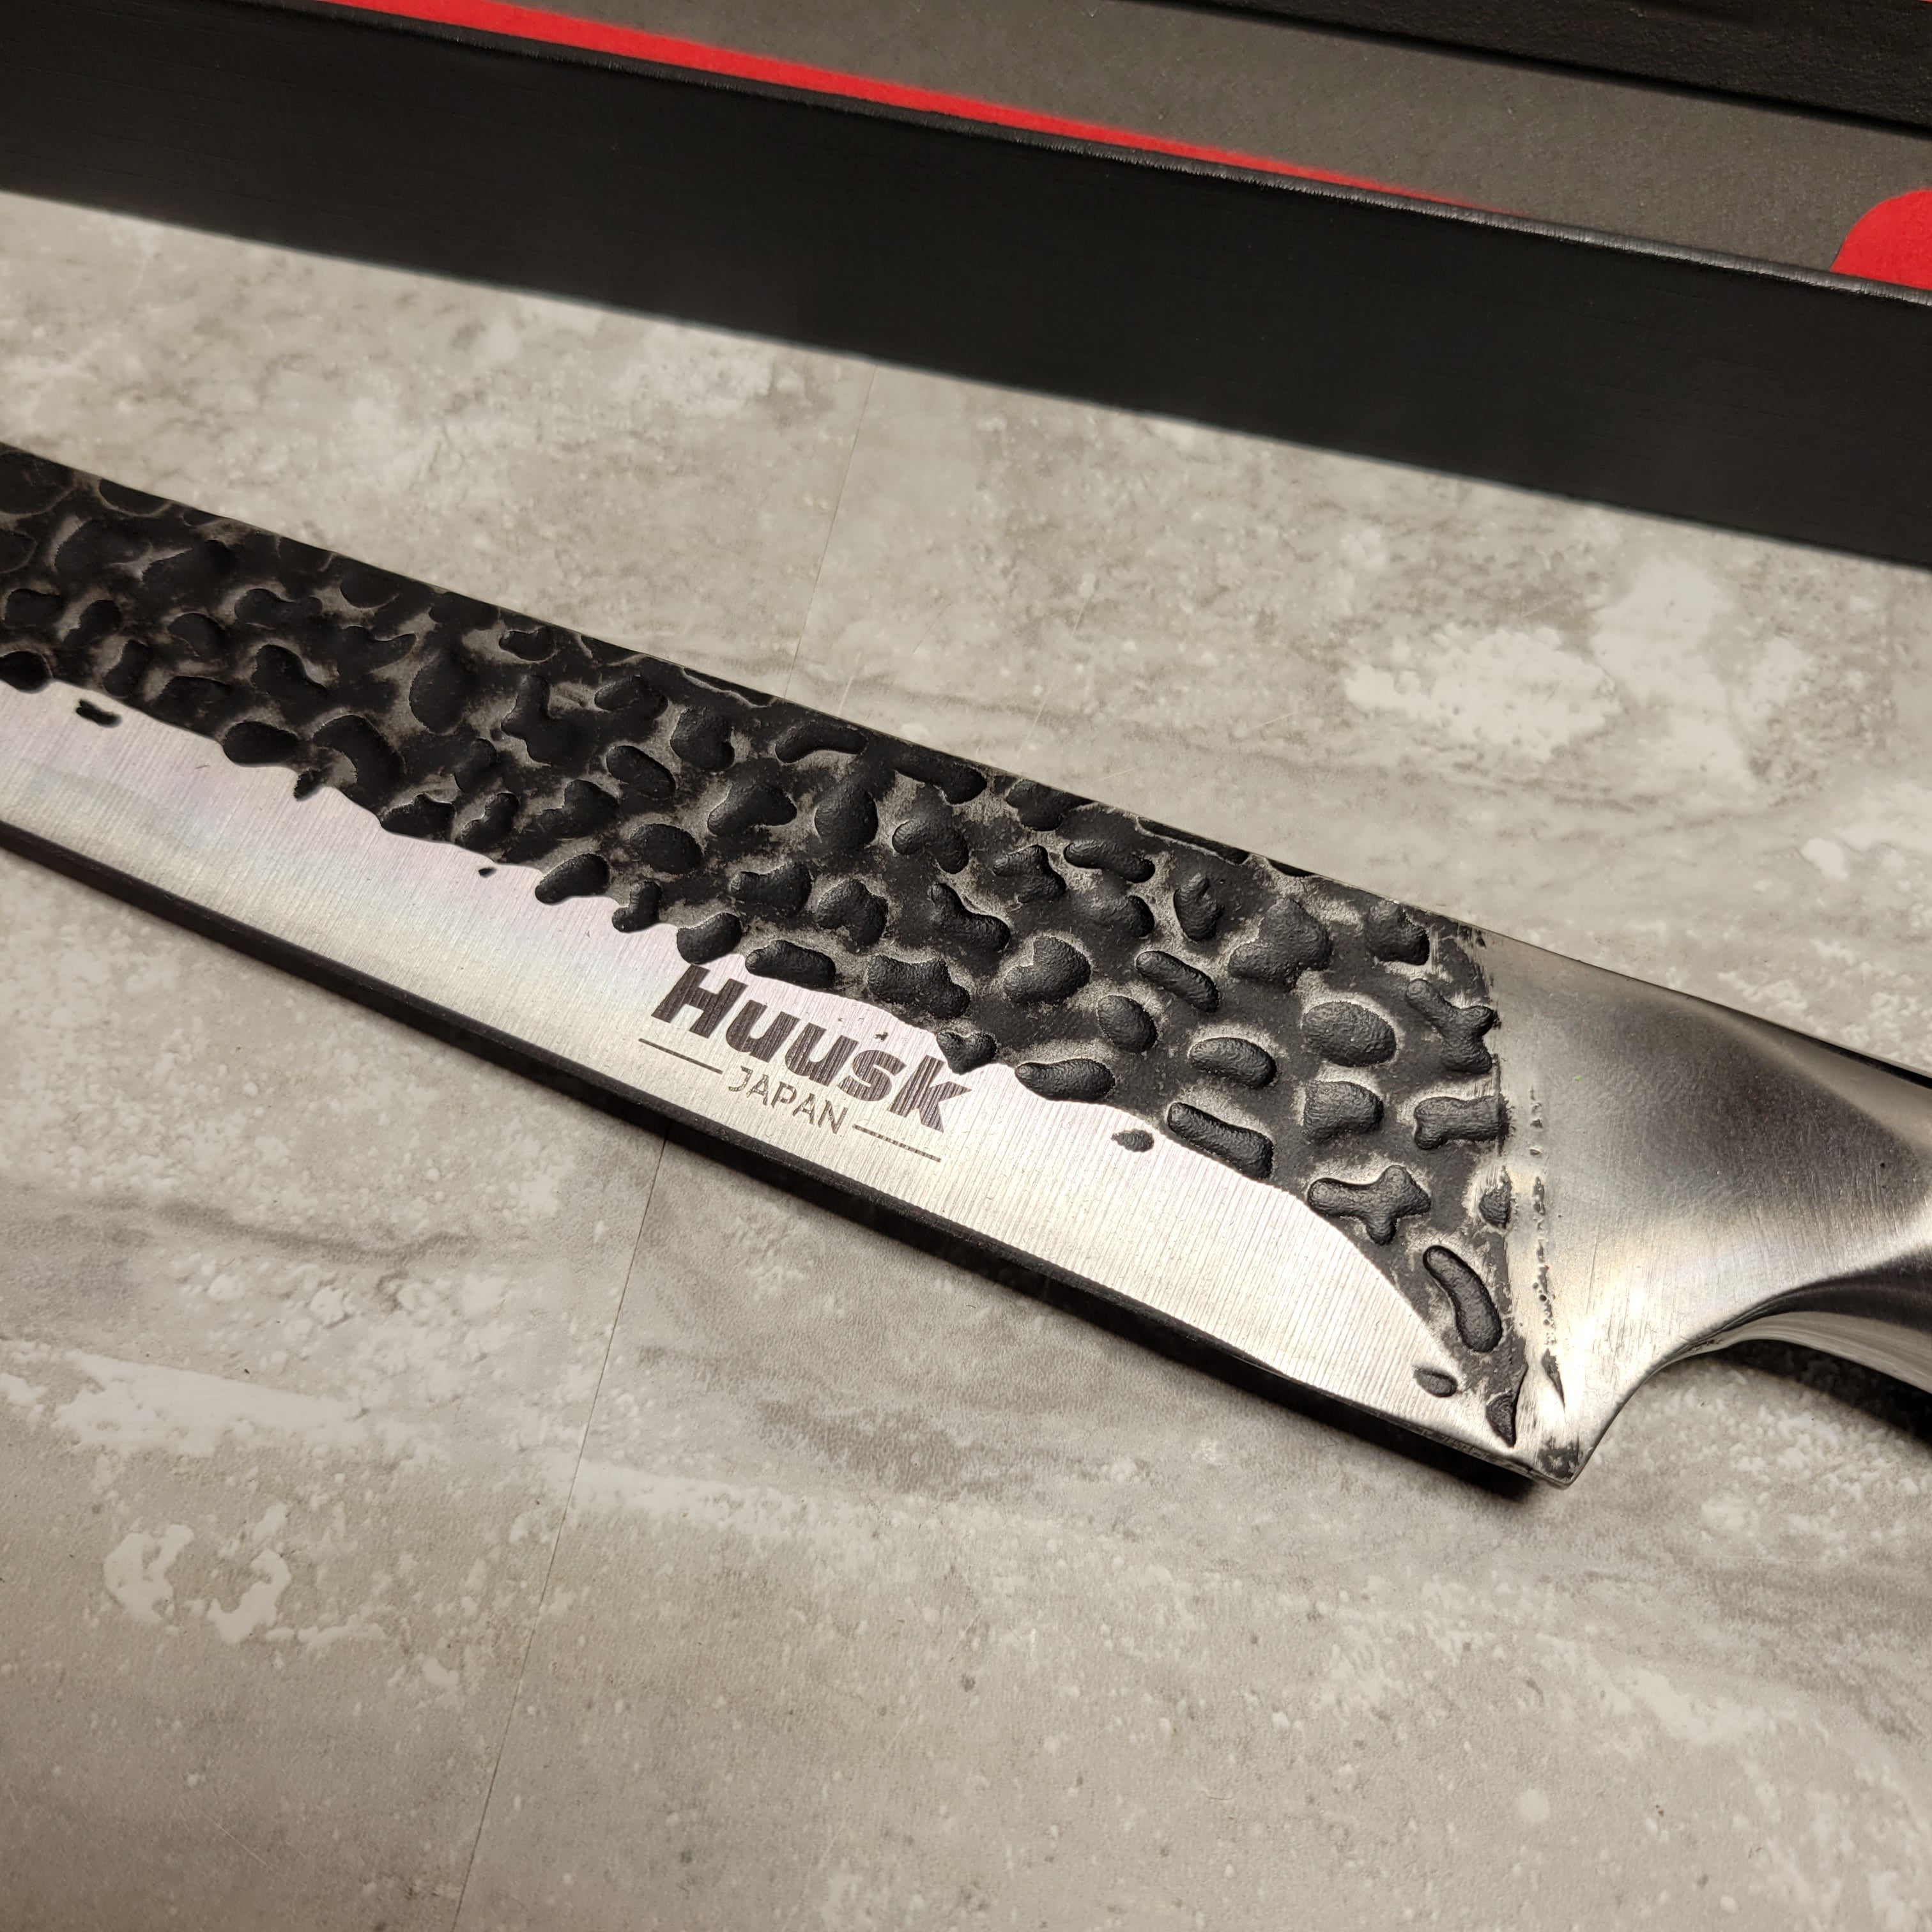 Huusk Japan Knife, Brisket Knife 11.6 Inch Premium Slicing Knife Hand Forged (8046018199790)